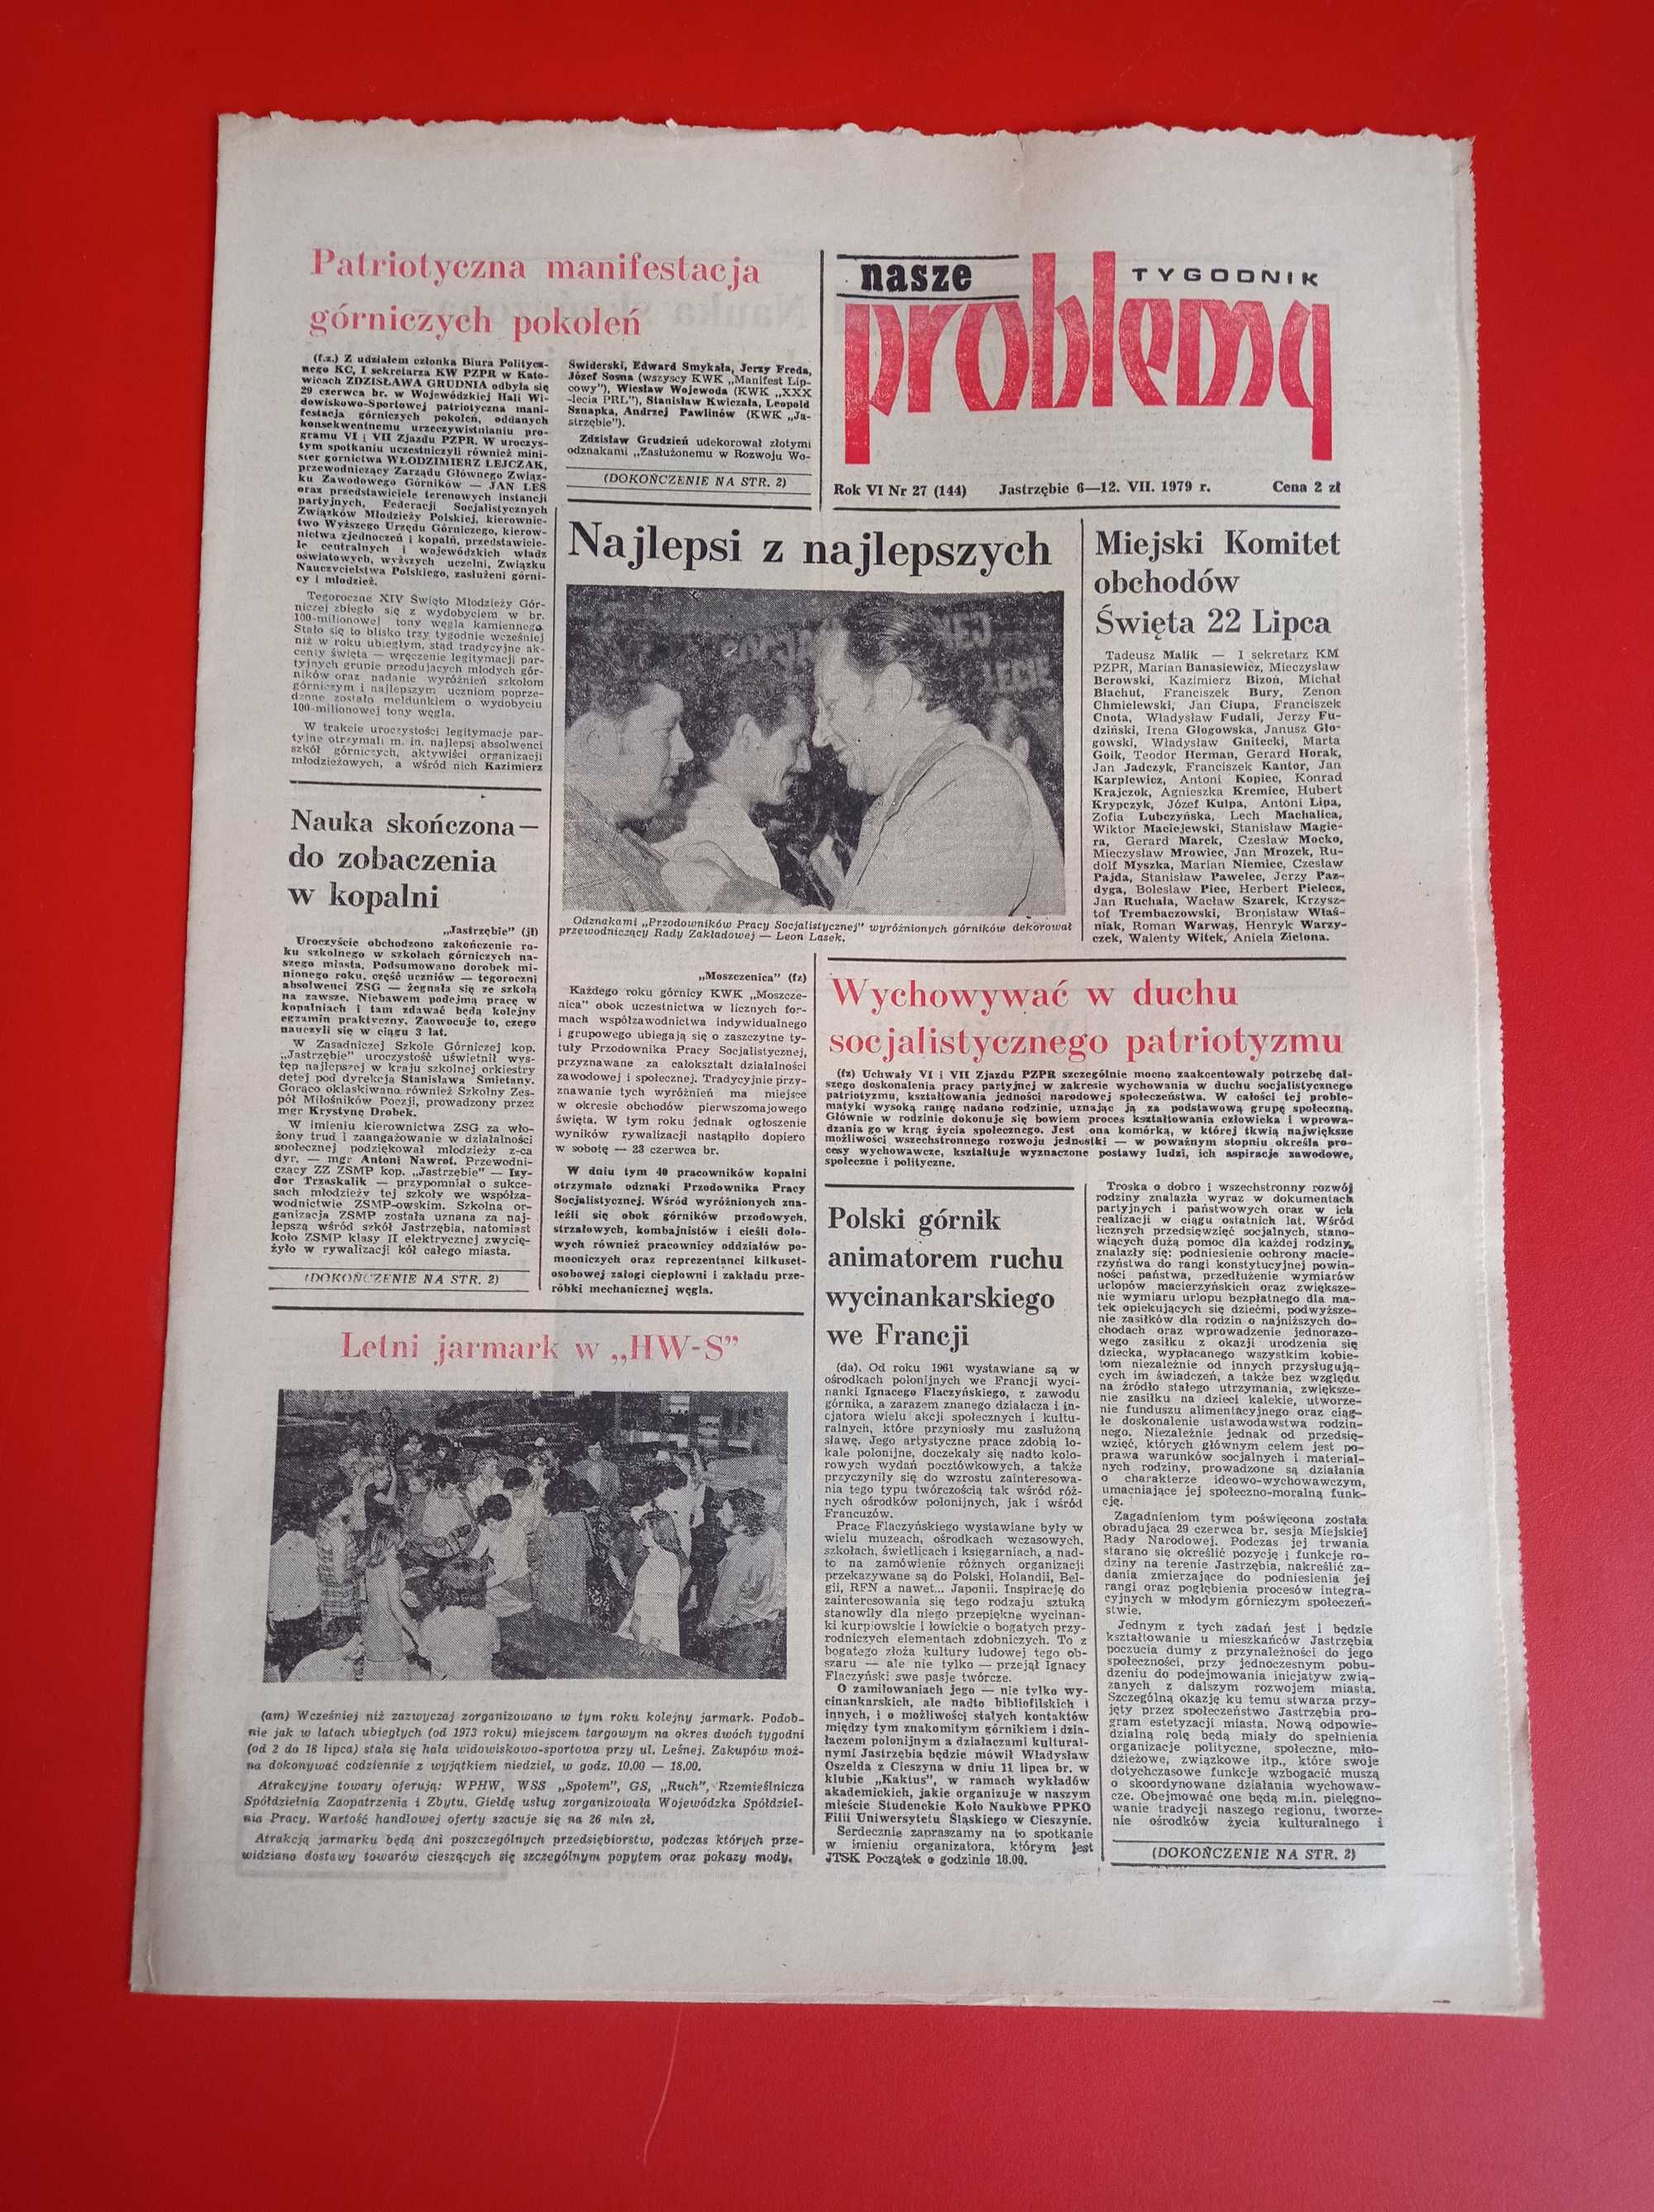 Nasze problemy, Jastrzębie, nr 27, 6-12 lipca 1979